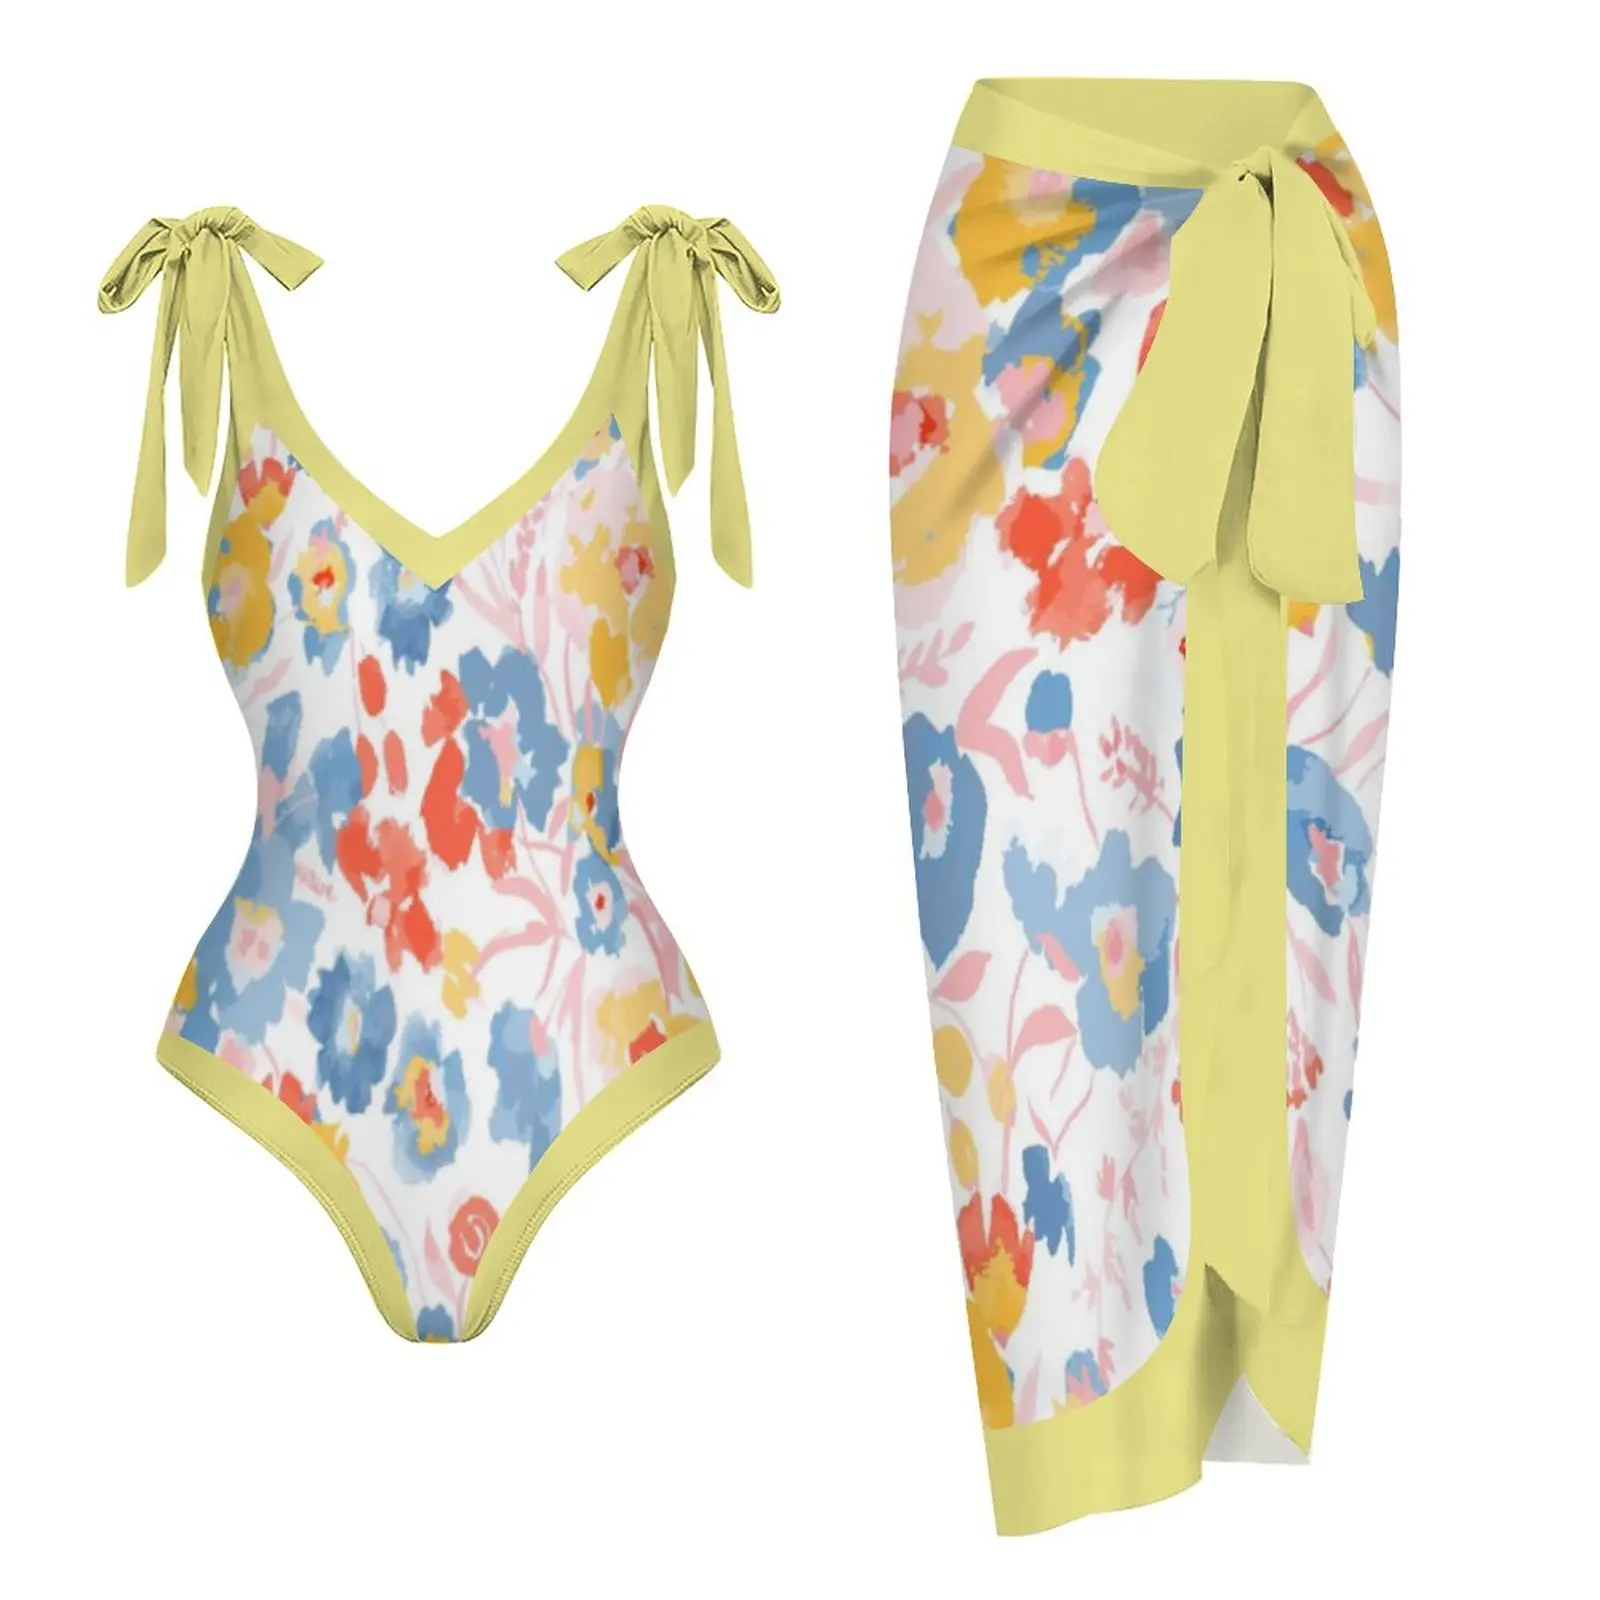 

Цельный купальник, женский модный купальник с цветочным принтом и накидкой, сексуальная пляжная одежда с открытой спиной и юбкой, бразильский пляжный купальный костюм